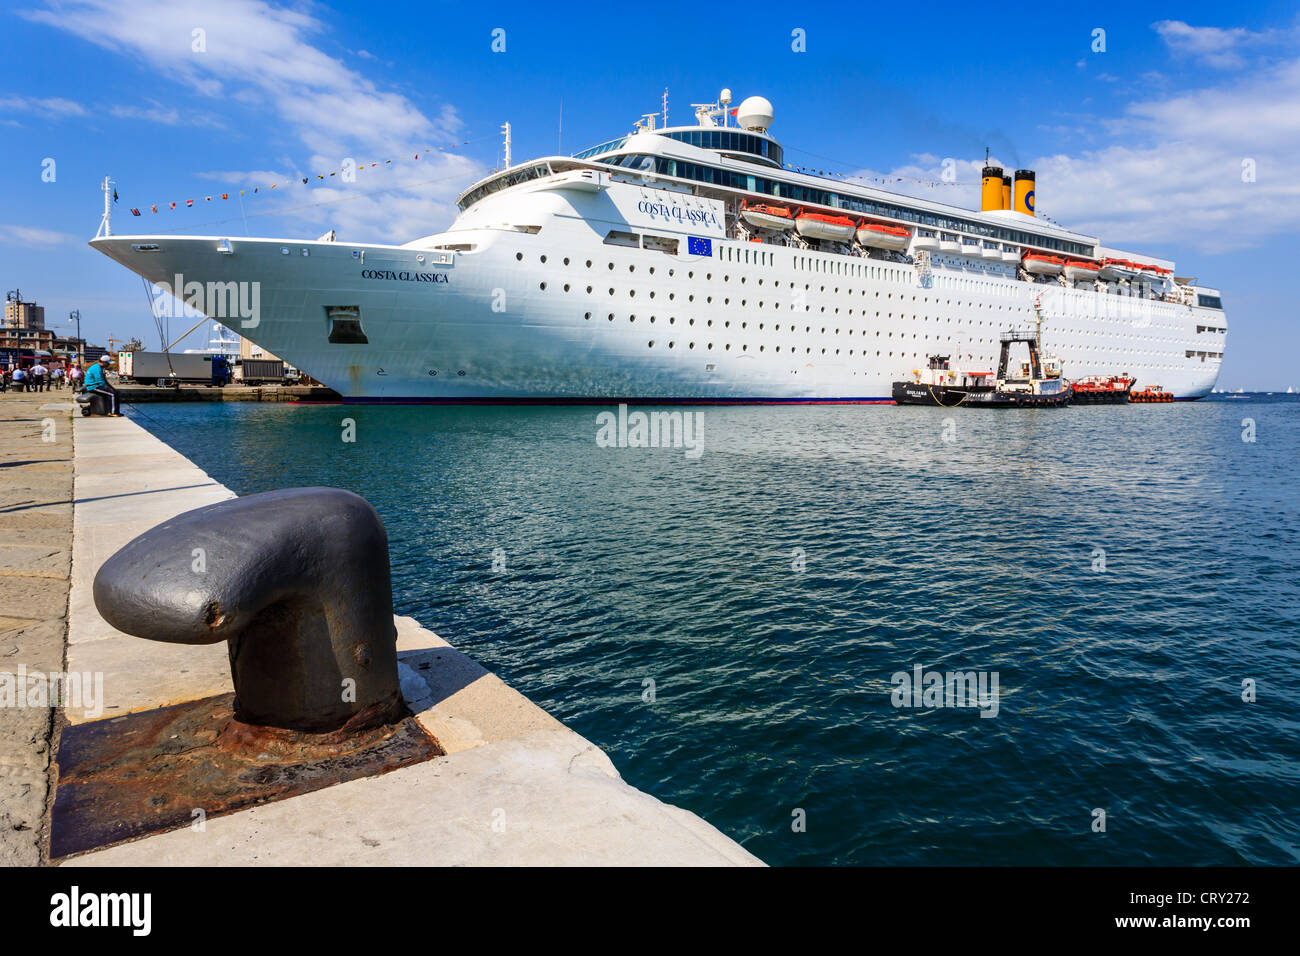 Cruse ship Costa Classica in the harbor of Trieste, Friuli-Venezia Giulia, Italy Stock Photo